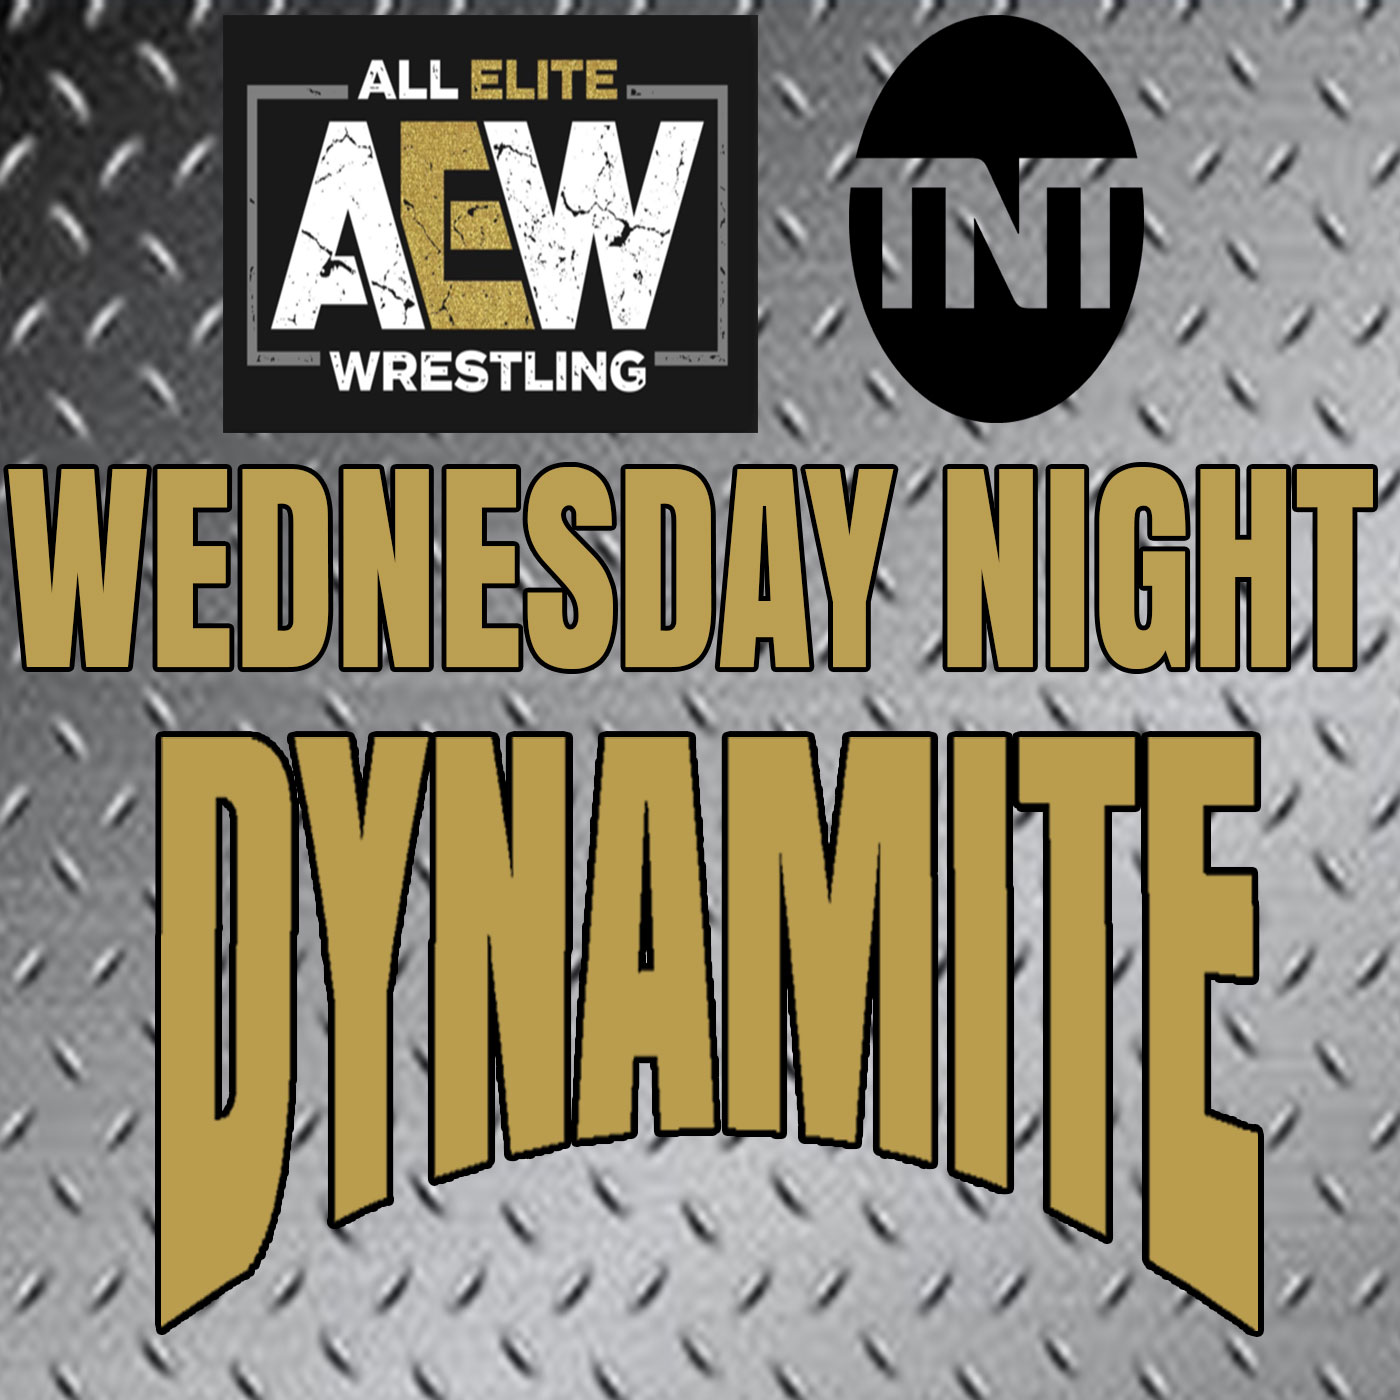 AEW vs WWE Wednesday Night Dynamite